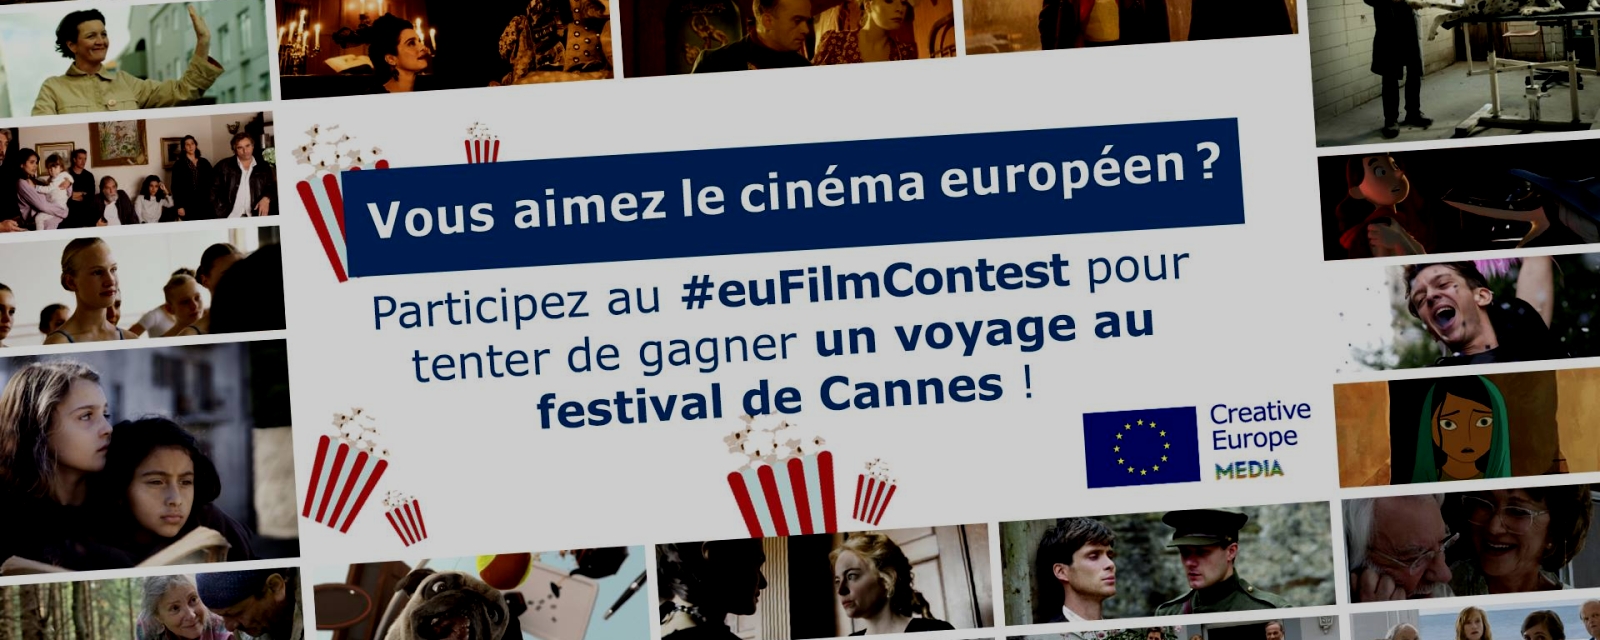 euFilmContest 2019